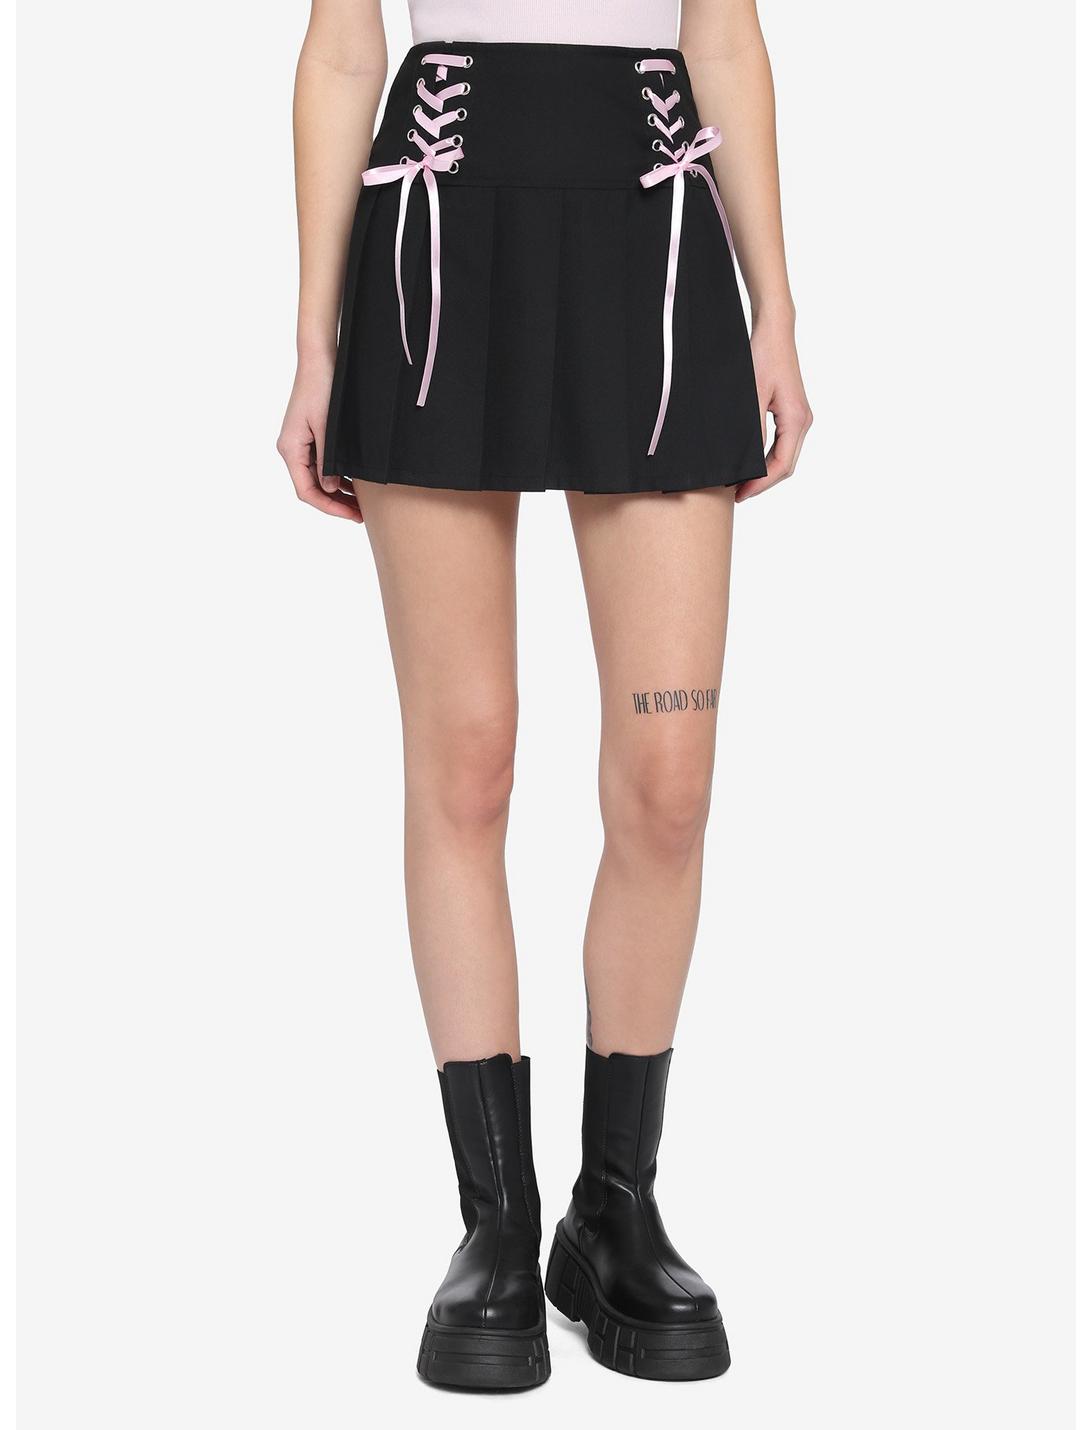 Black & Pink Lace-Up Skirt, BLACK, hi-res